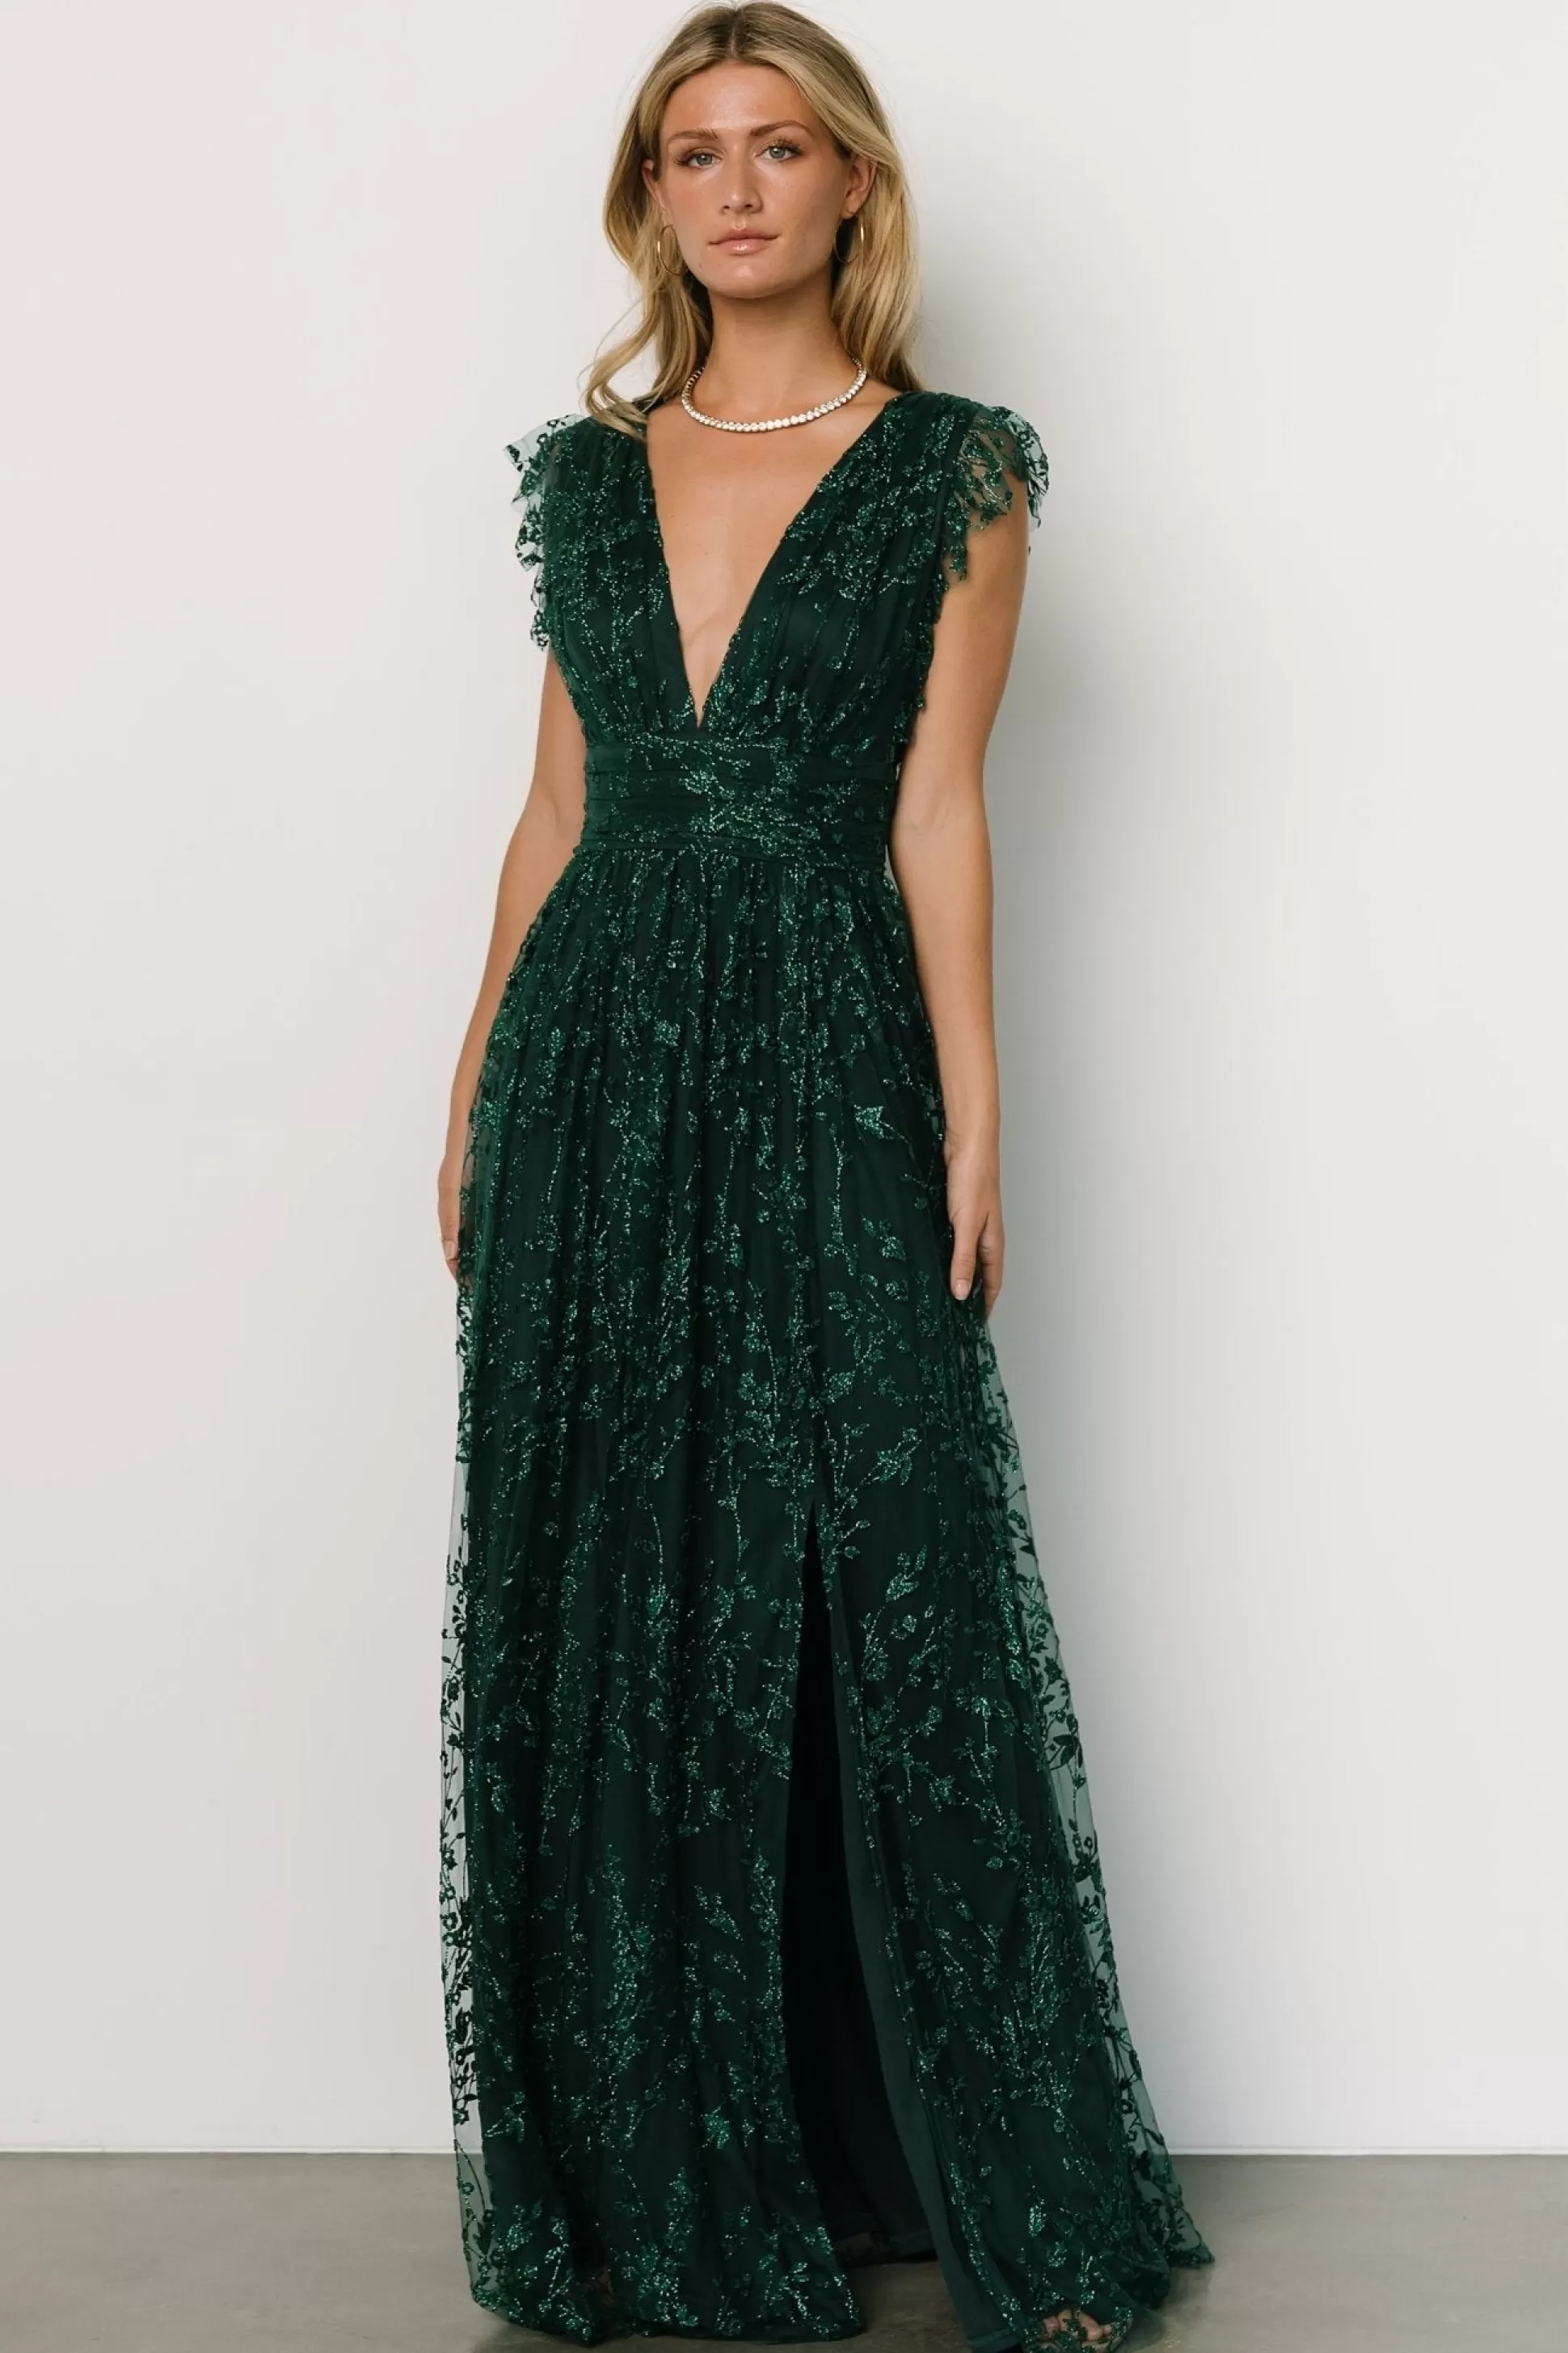 embellished + sequined | Baltic Born Arlene Shimmer Gown | Emerald